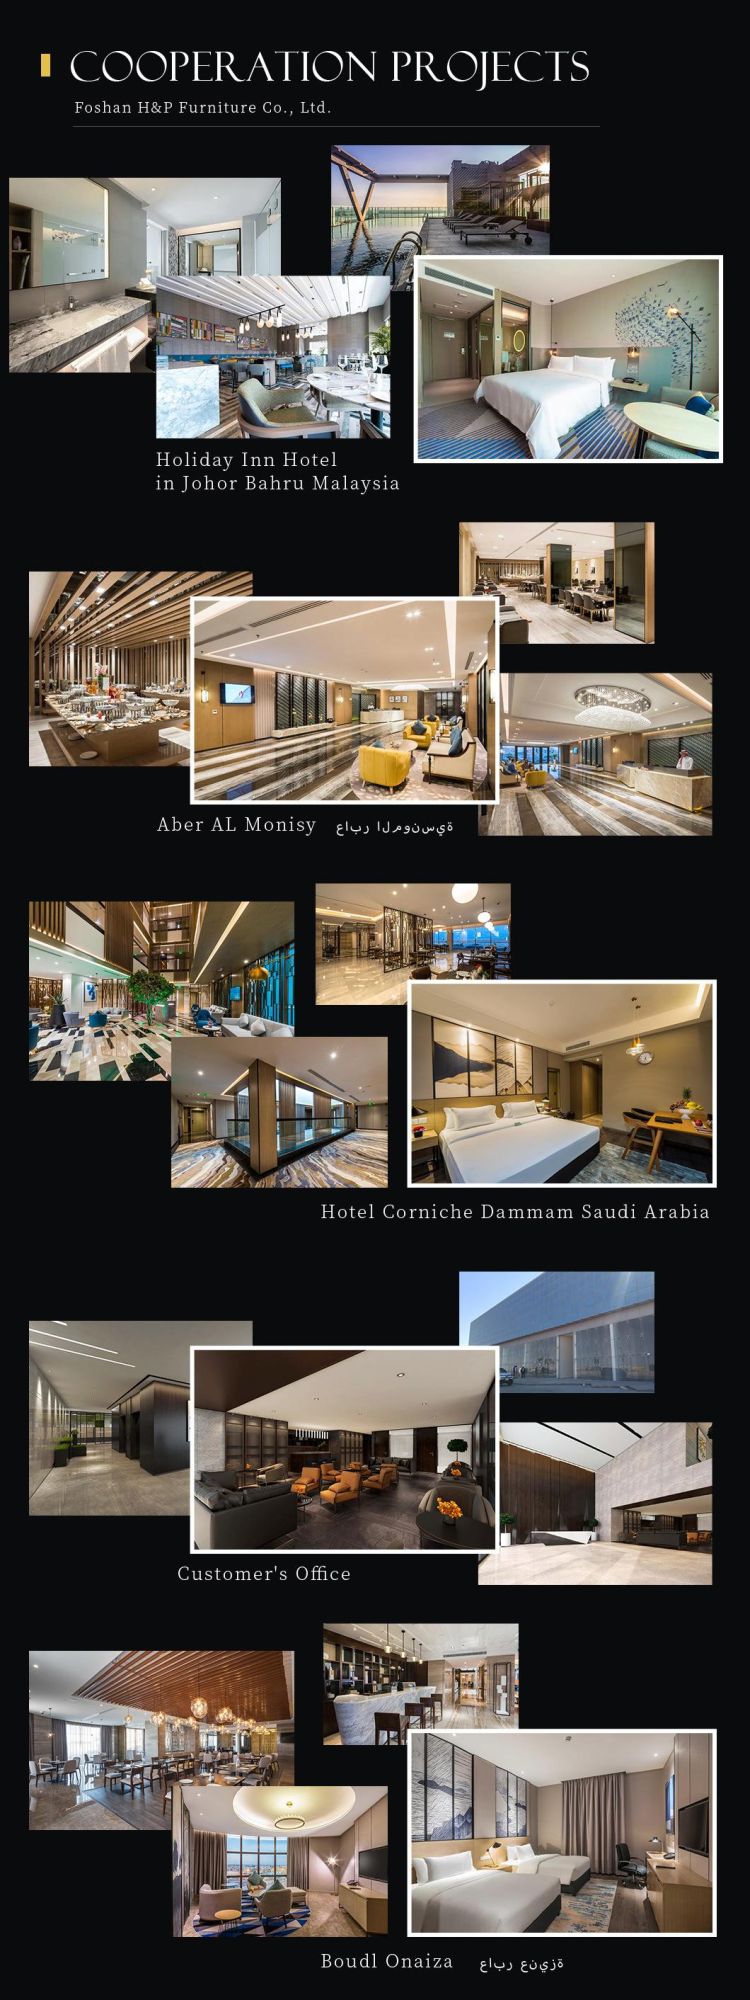 Project Order 3D Design 5 Star Thailand Hotel Furniture in Hotel Bedroom Set